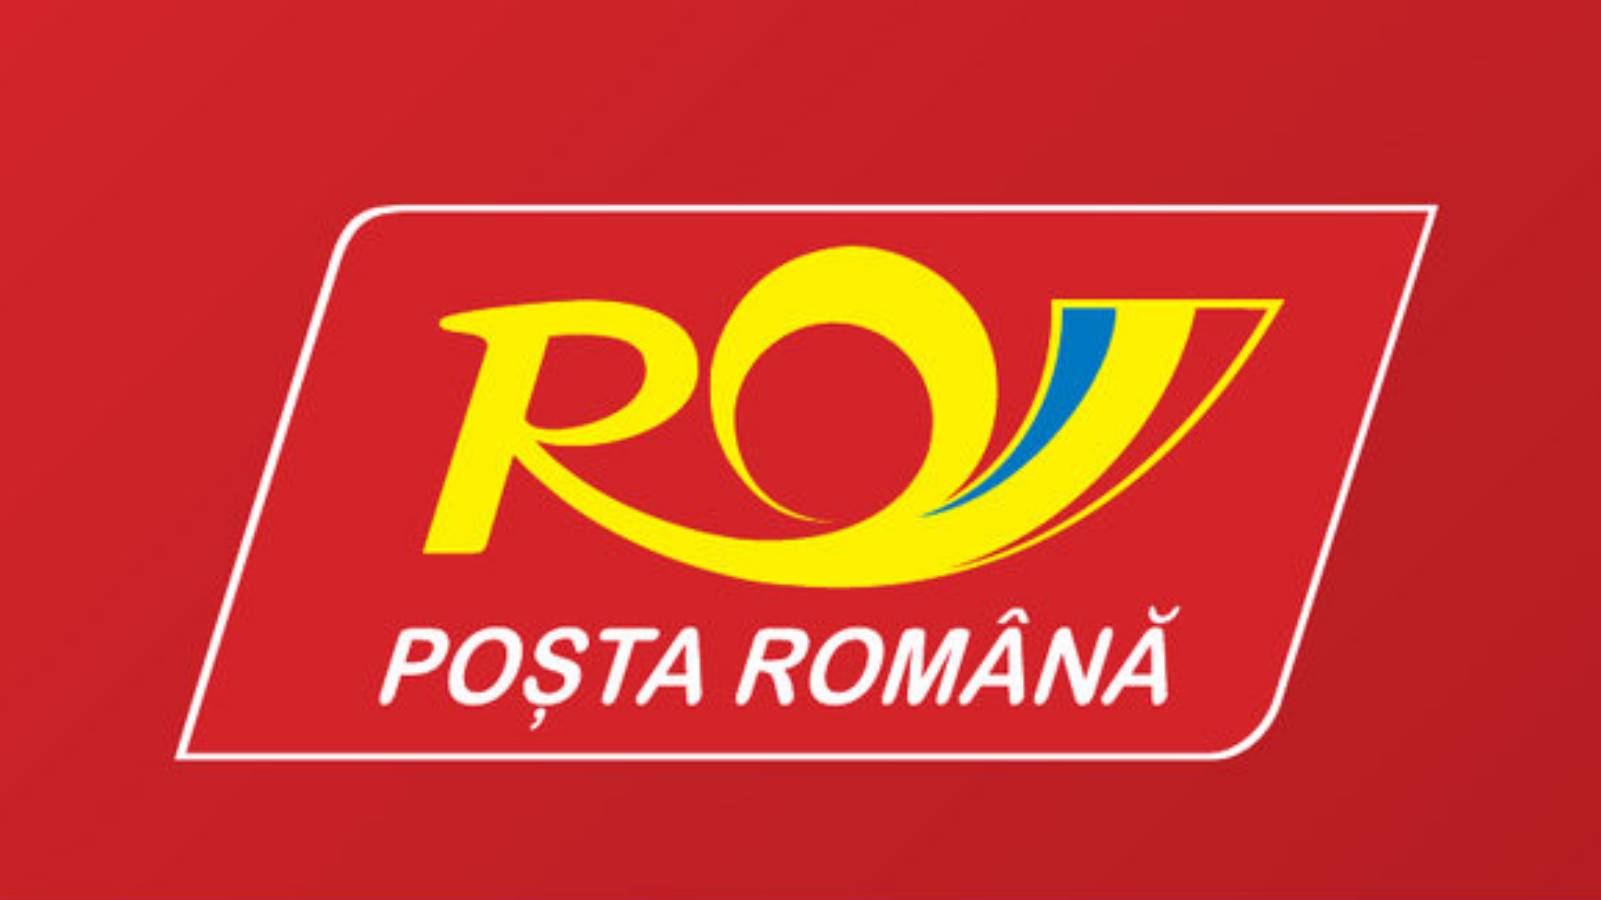 De Roemeense Post is kwetsbaar